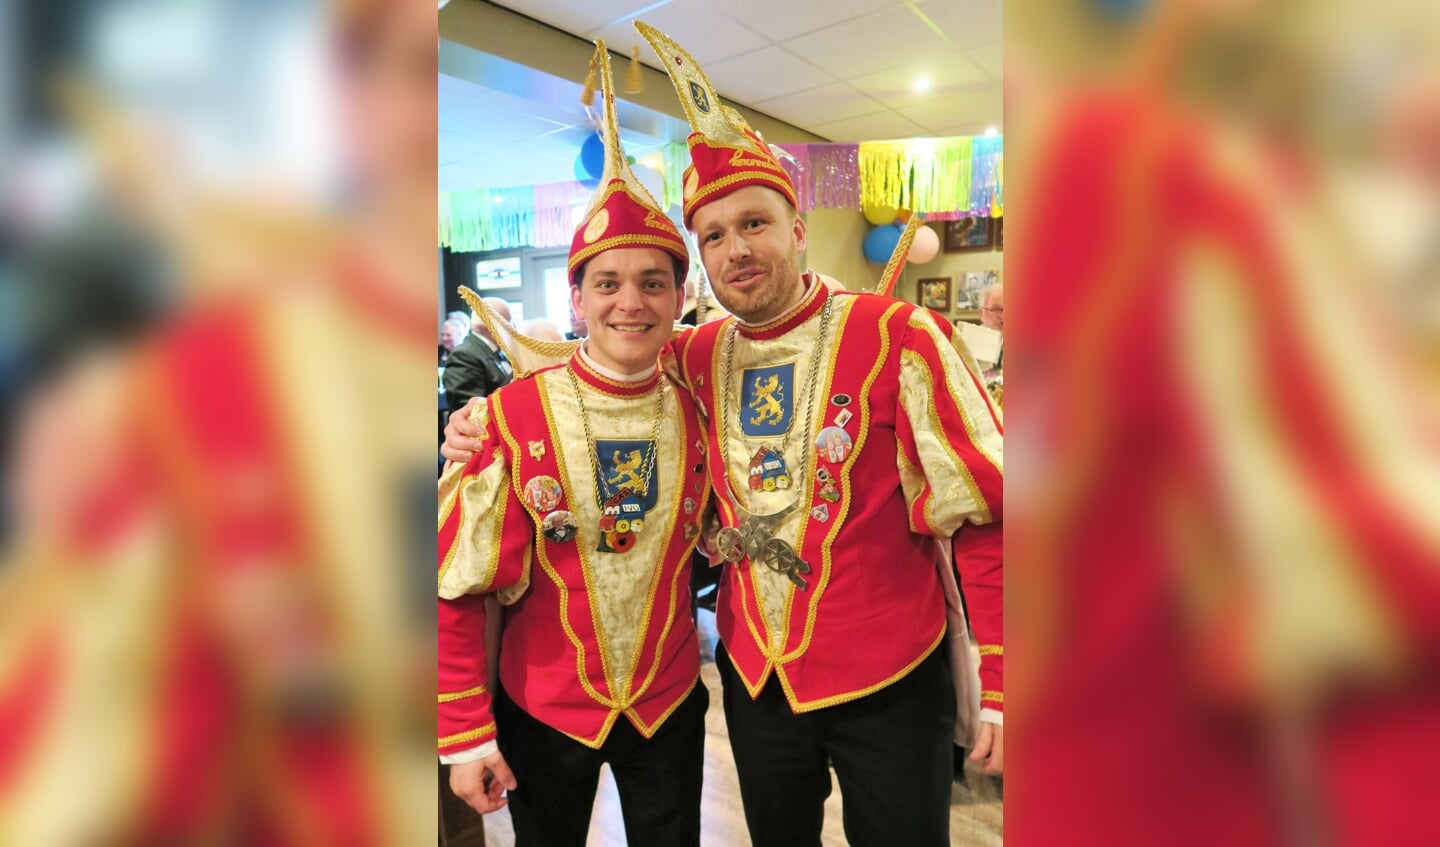 De carnavalsleiders van 2019: Prins Ivo Thuinte (rechts) en Adjudant Mark Mink zijn de komende campagne Fluit & Duit van CV De Knunnekes. Foto: Theo Huijskes